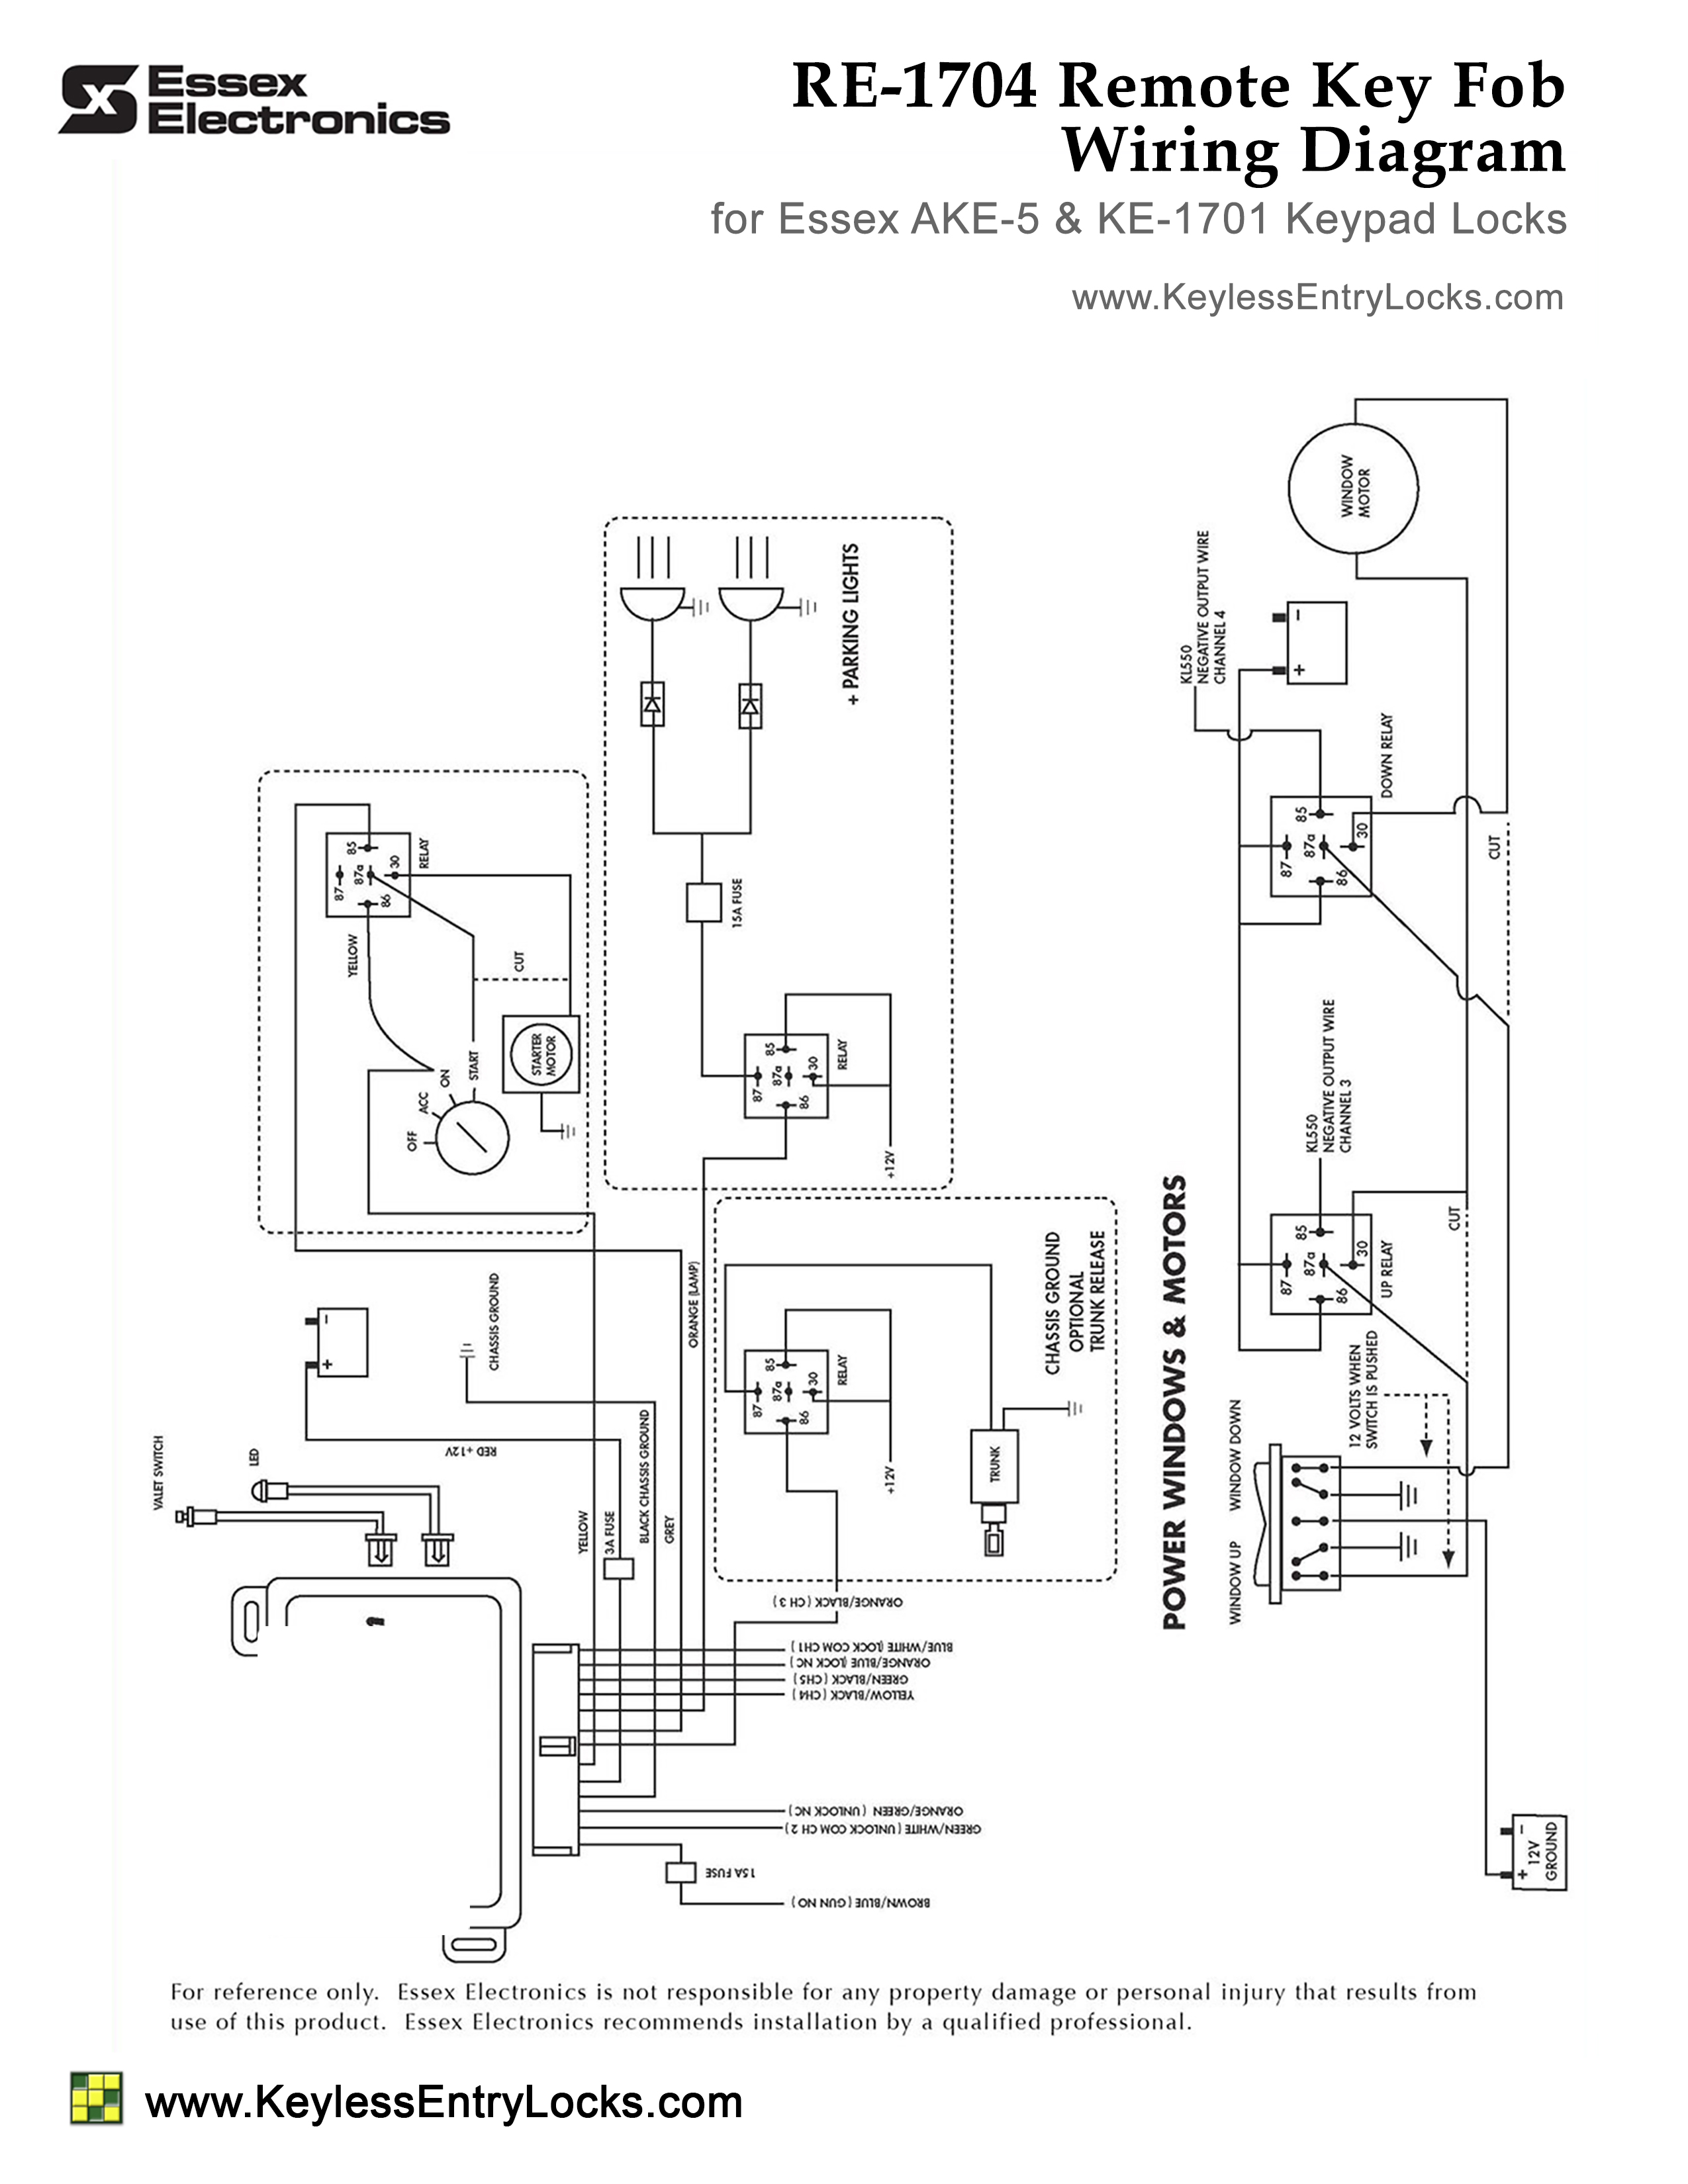 Essex RE1704 Wiring Diagram